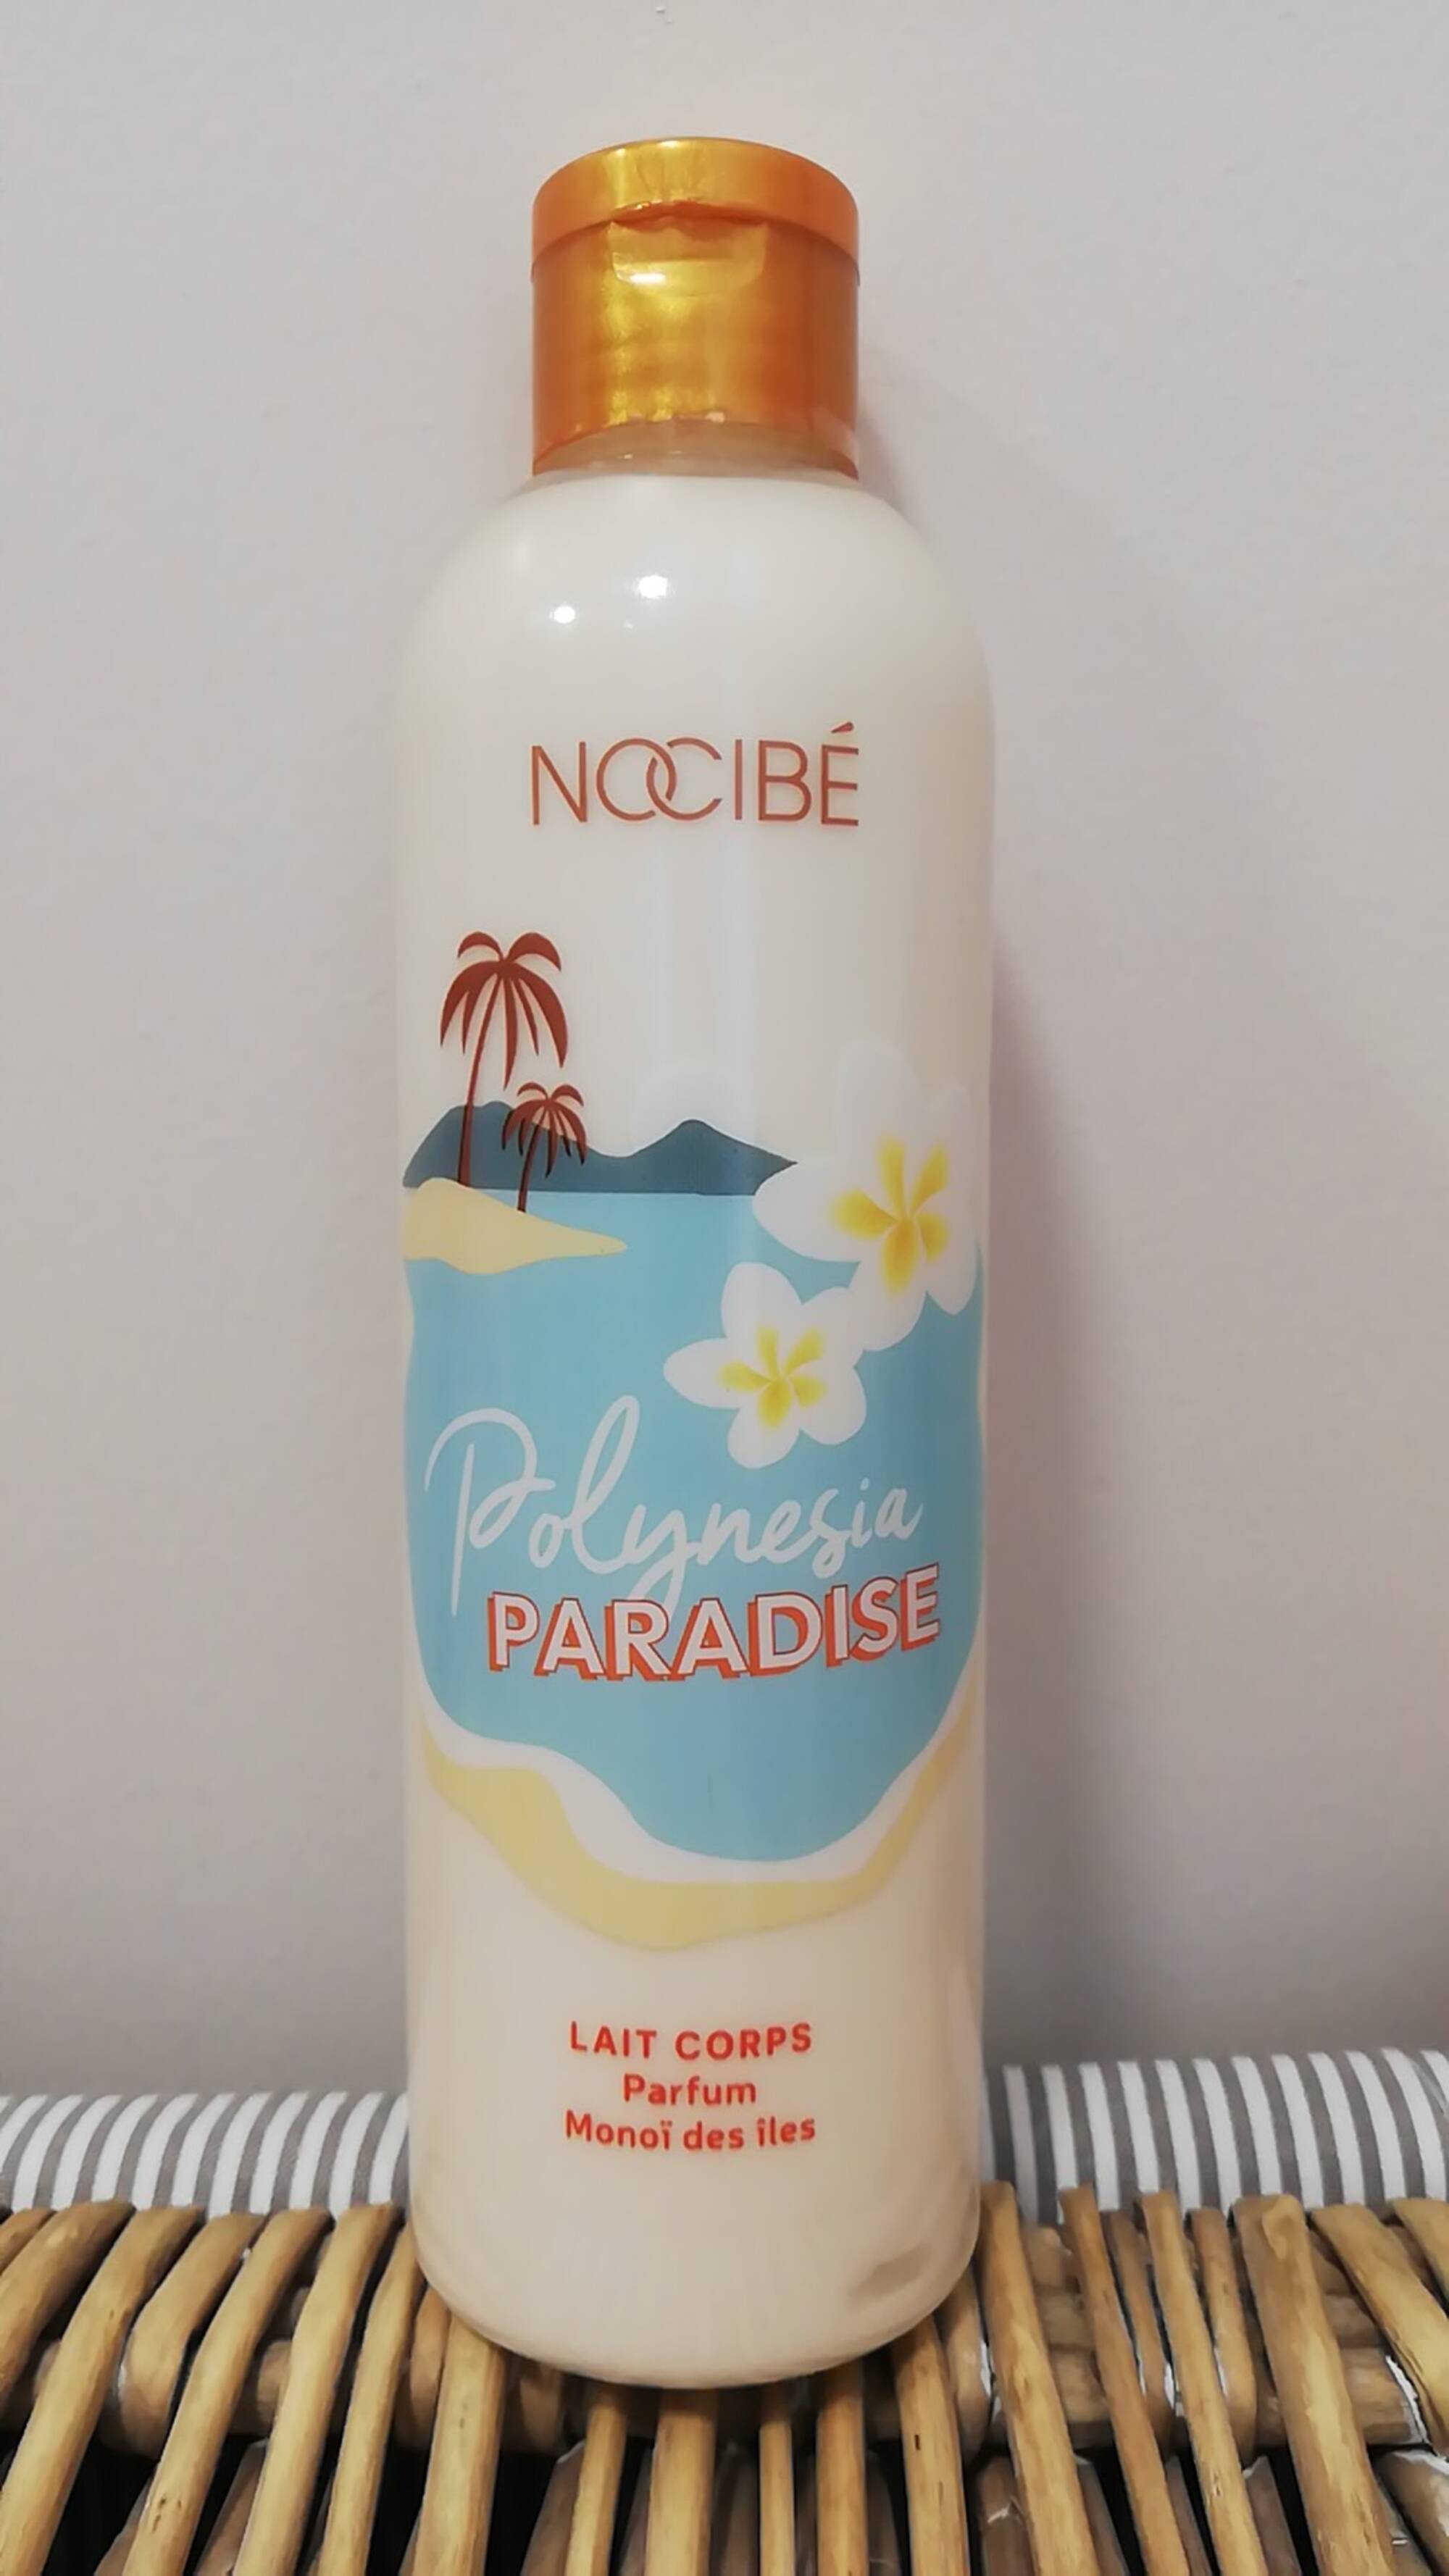 NOCIBÉ - Polynesia paradise - Lait corps parfum monoï des îles